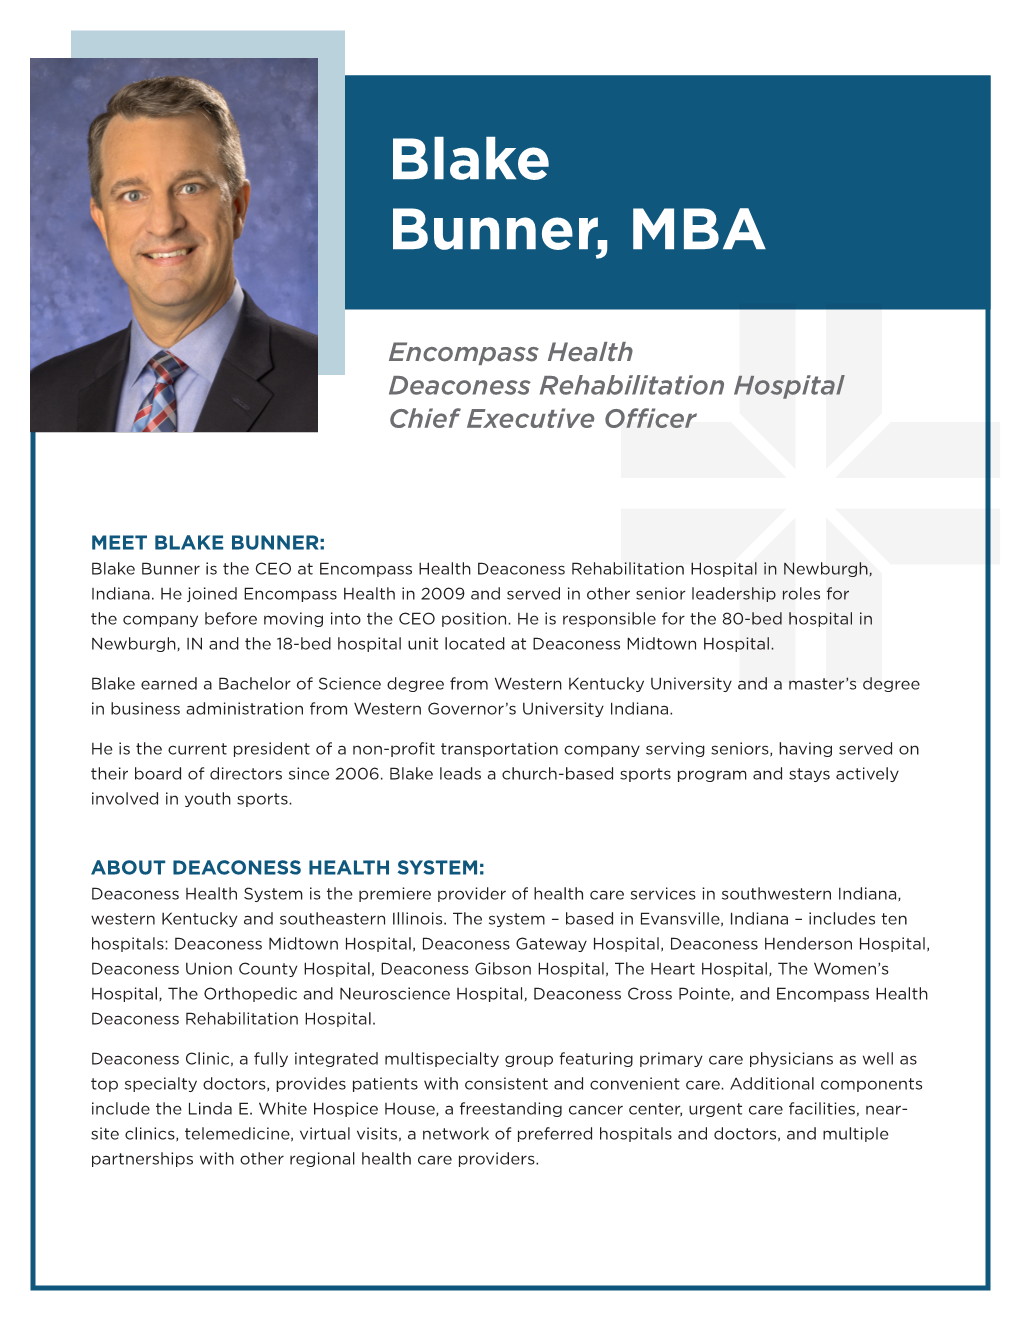 Blake Bunner, MBA